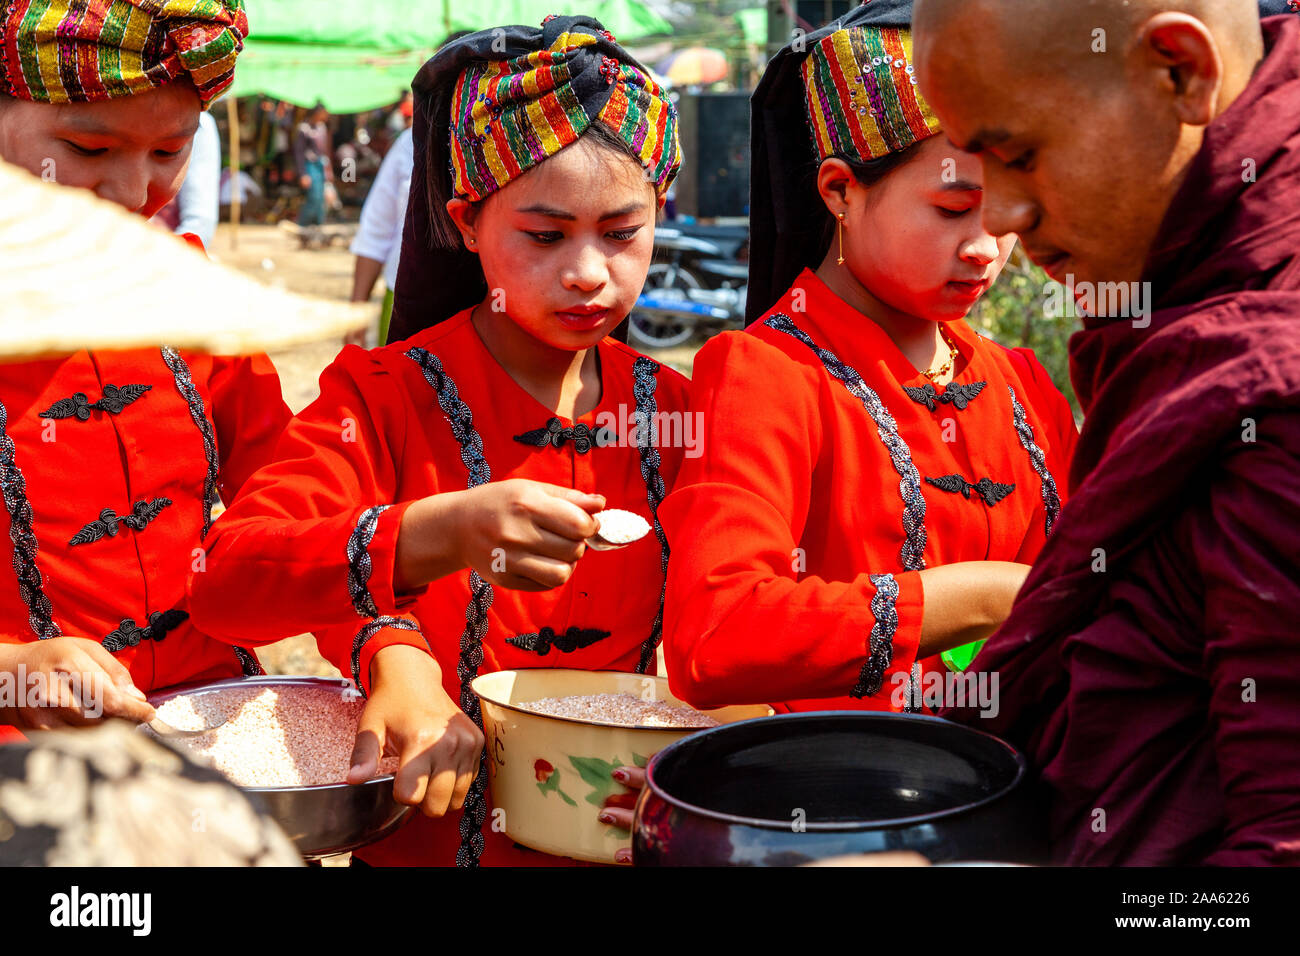 Junge Frauen, die ethnischen Minderheiten angehören, Almosen/Essen den Mönchen, die Teil in einer Prozession, die Pindaya Cave Festival, Pindaya, Shan Staat, Myanmar Stockfoto